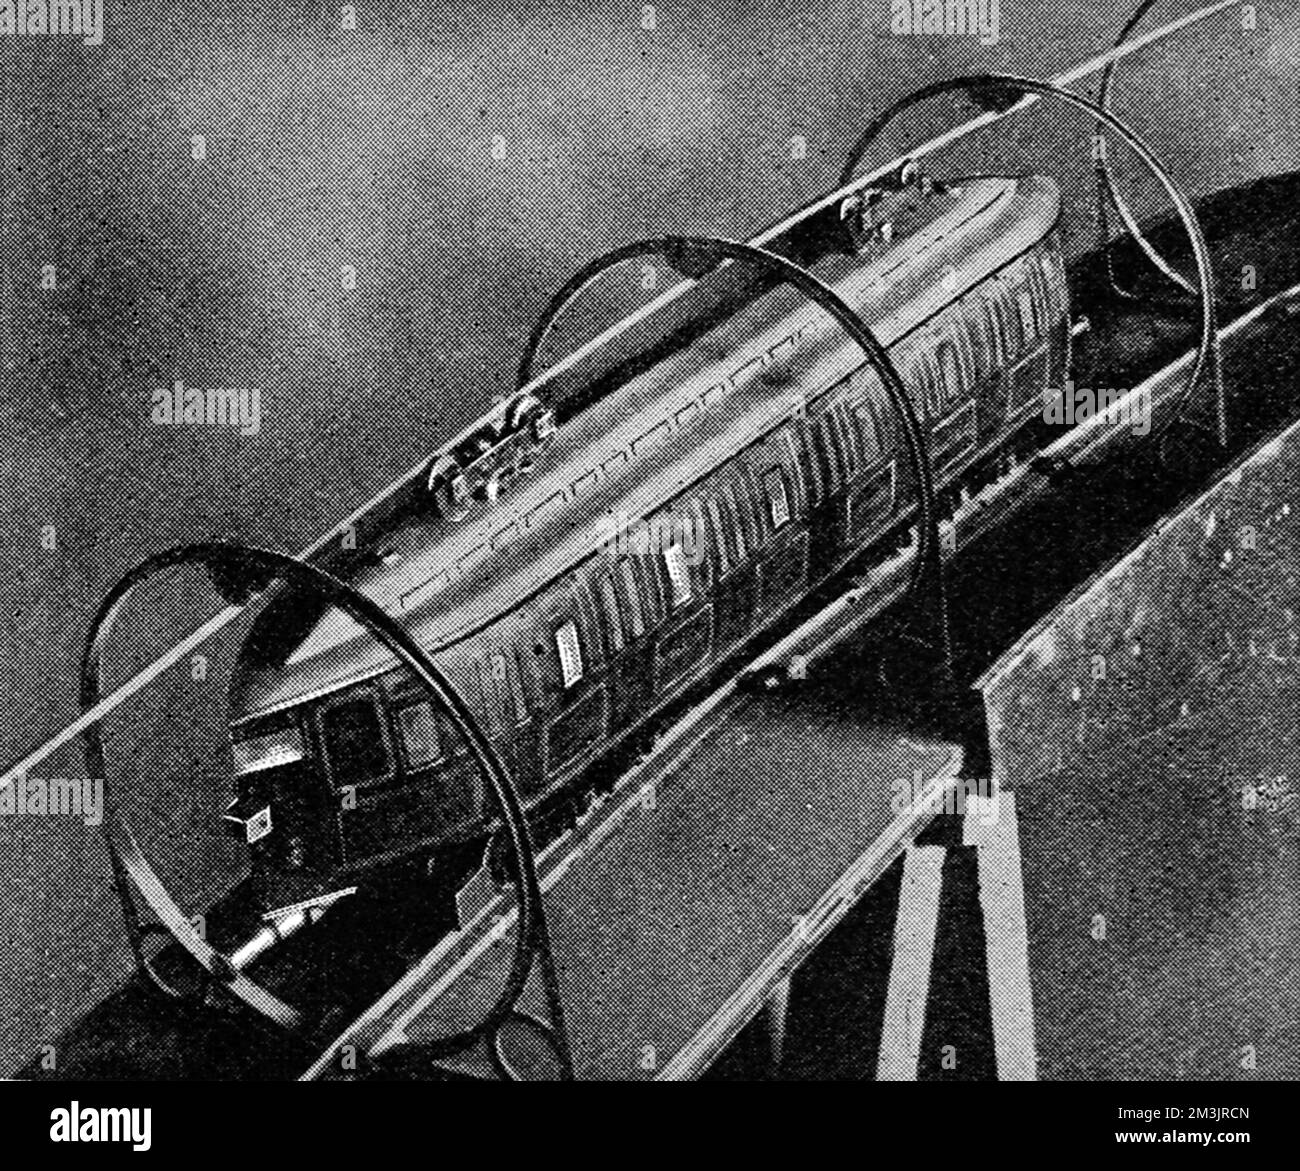 Die Eisenbahn der Zukunft, die 300 km/h fährt. Das Arbeitsmodell von Herrn E. W Chalmers Kearney für seine Hochgeschwindigkeitsbahn, bei dem, so behauptete er, 300 km/h sicher erreicht werden könnten. Das Design war unverwechselbar, mit einer Schiene über dem Zug und einer darunter. Datum: 27.. Juni 1908 Stockfoto